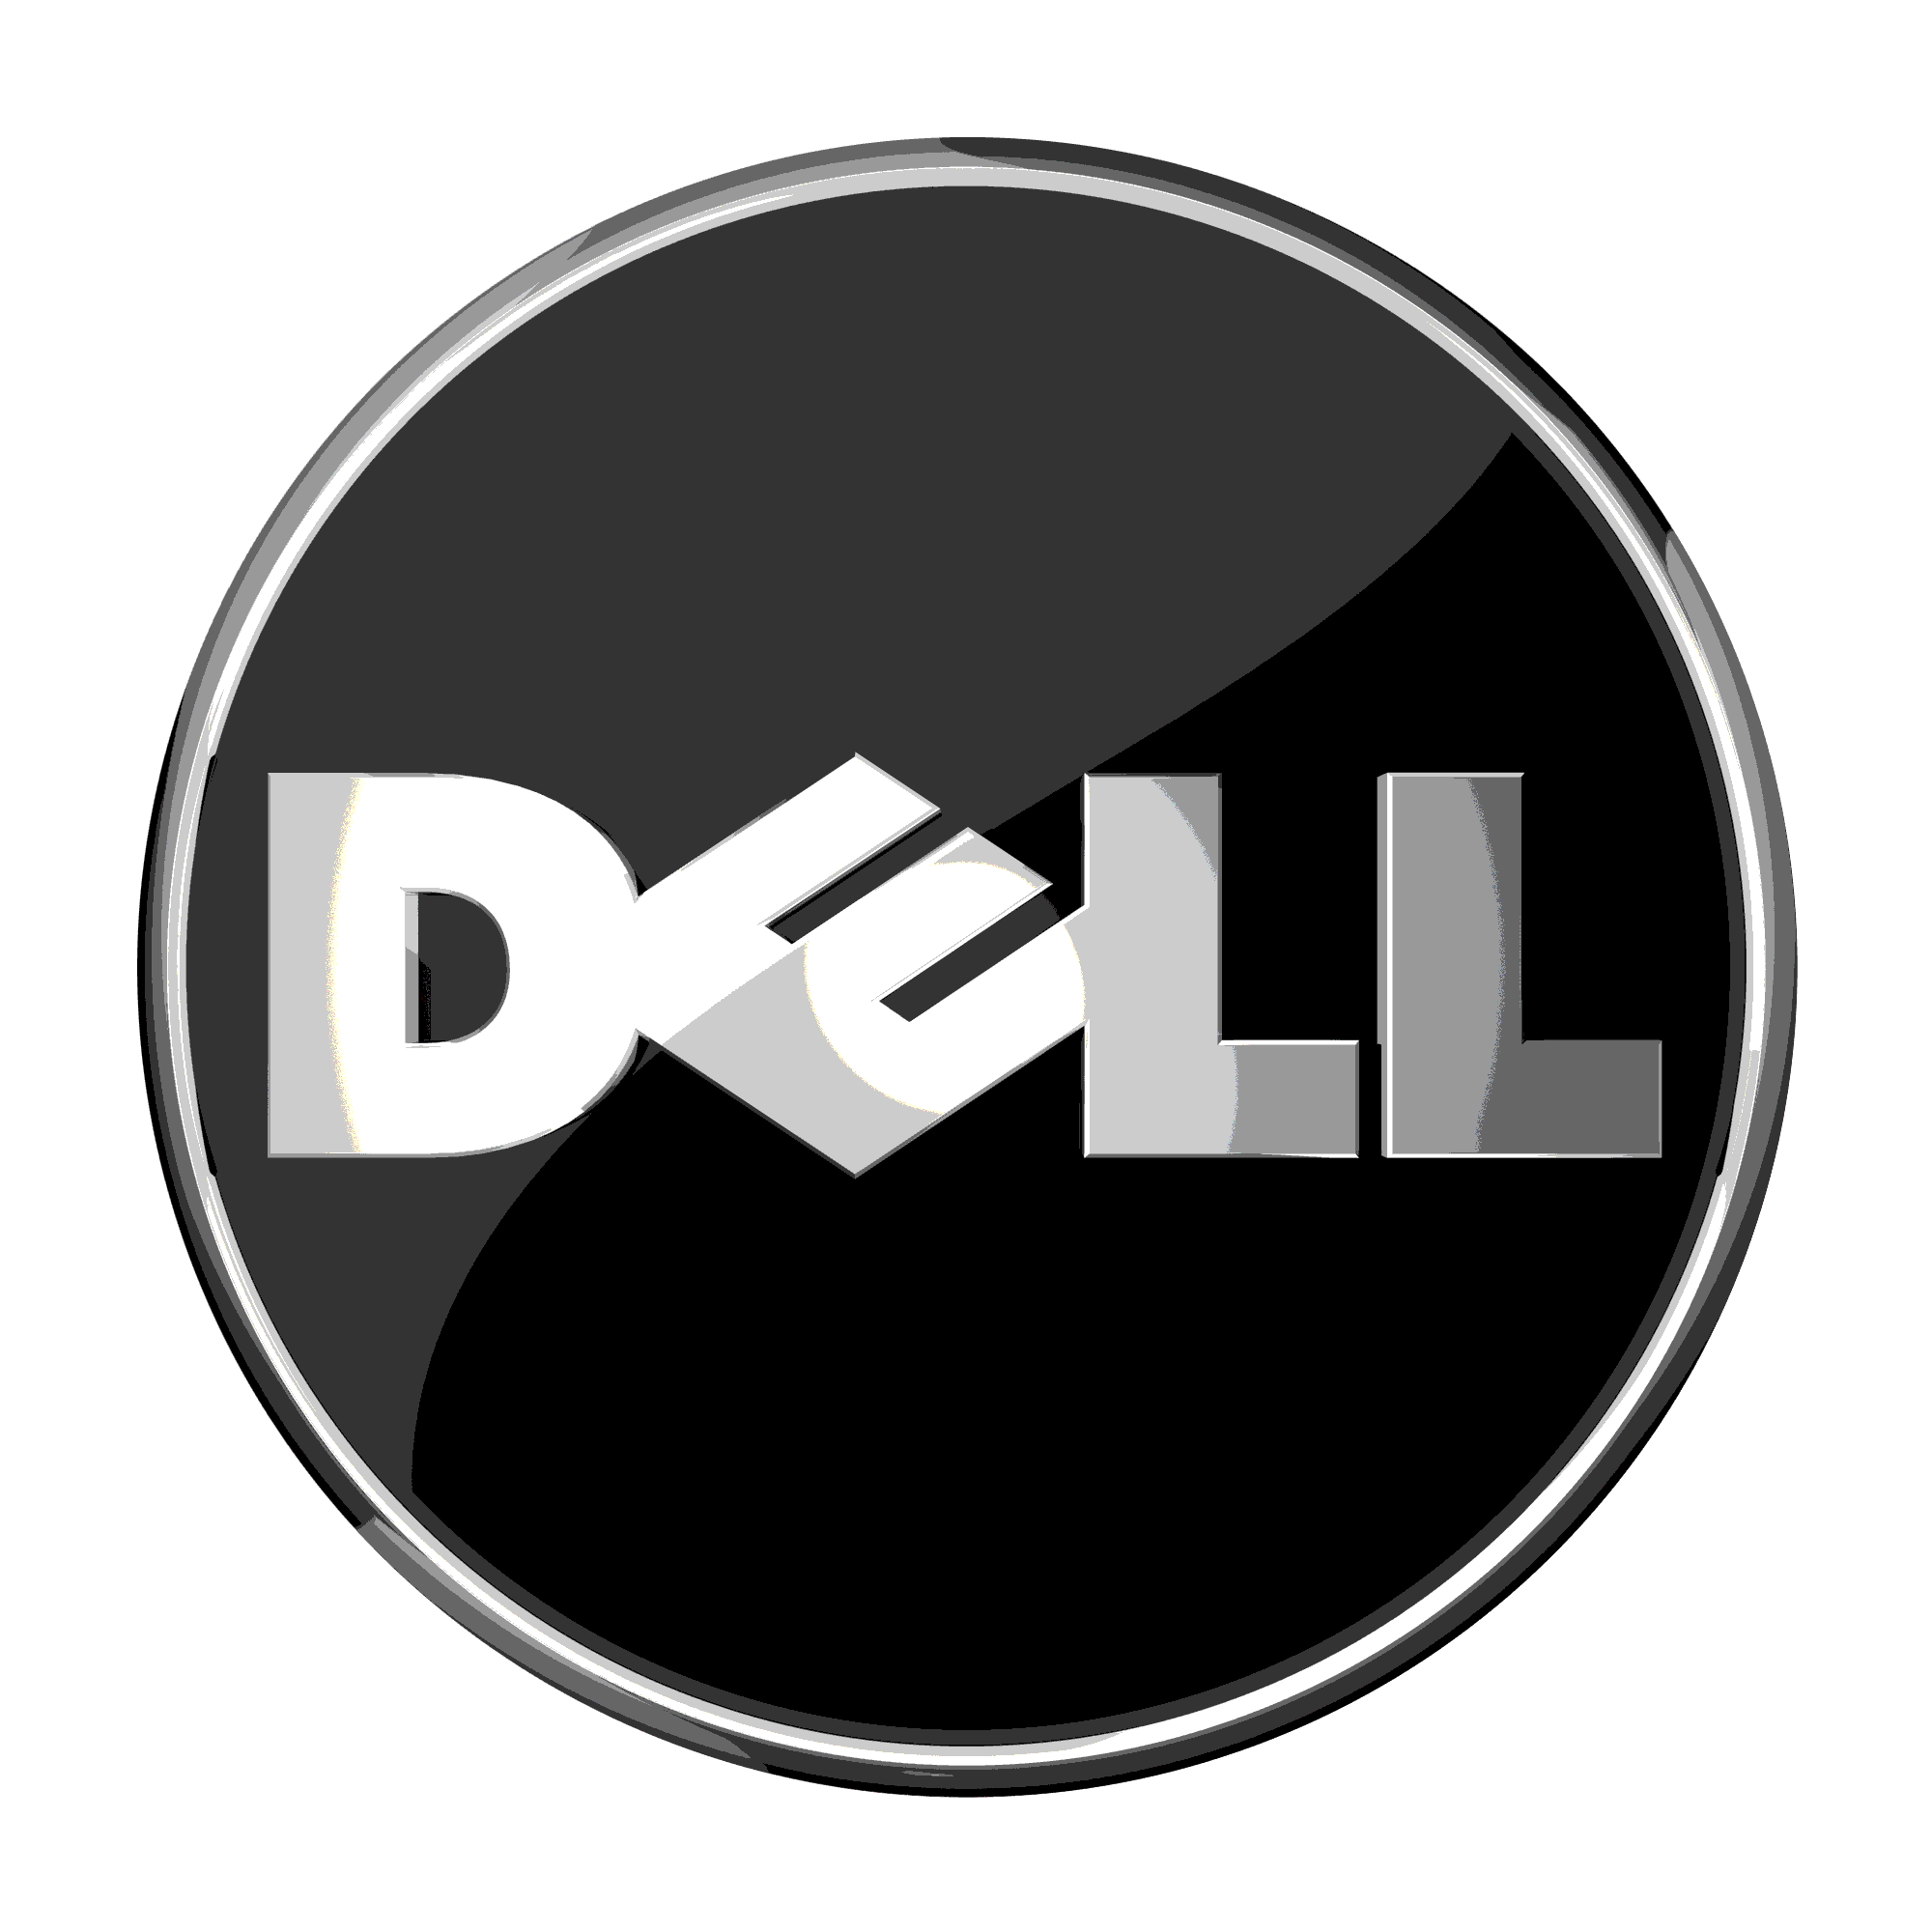 Dell Optiplex 5040 SFF